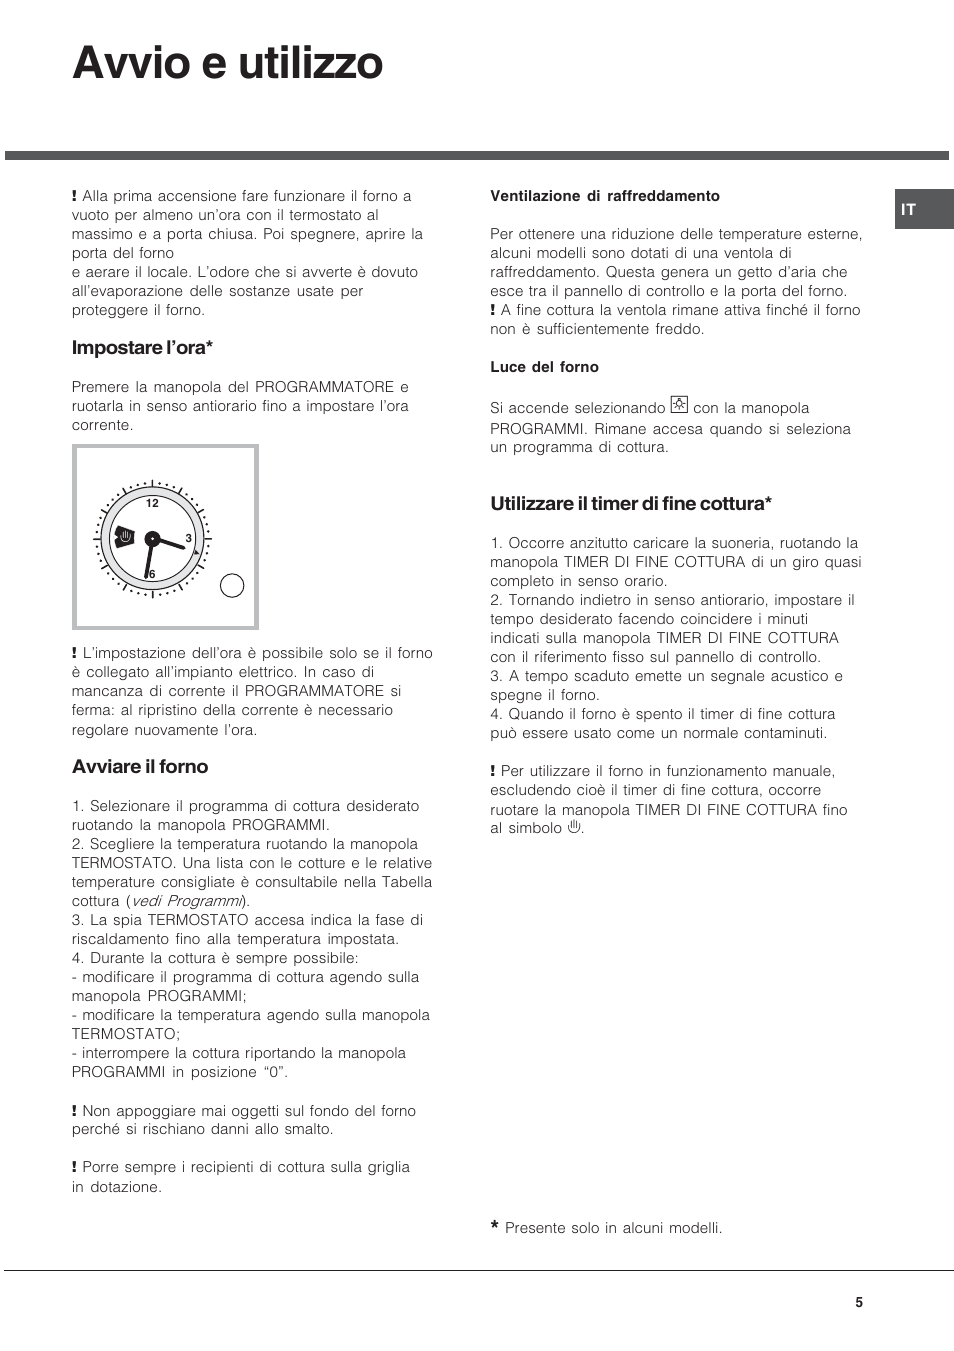 Avvio e utilizzo, Impostare l'ora, Avviare il forno | Hotpoint Ariston FT  850.1/HA User Manual | Page 5 / 56